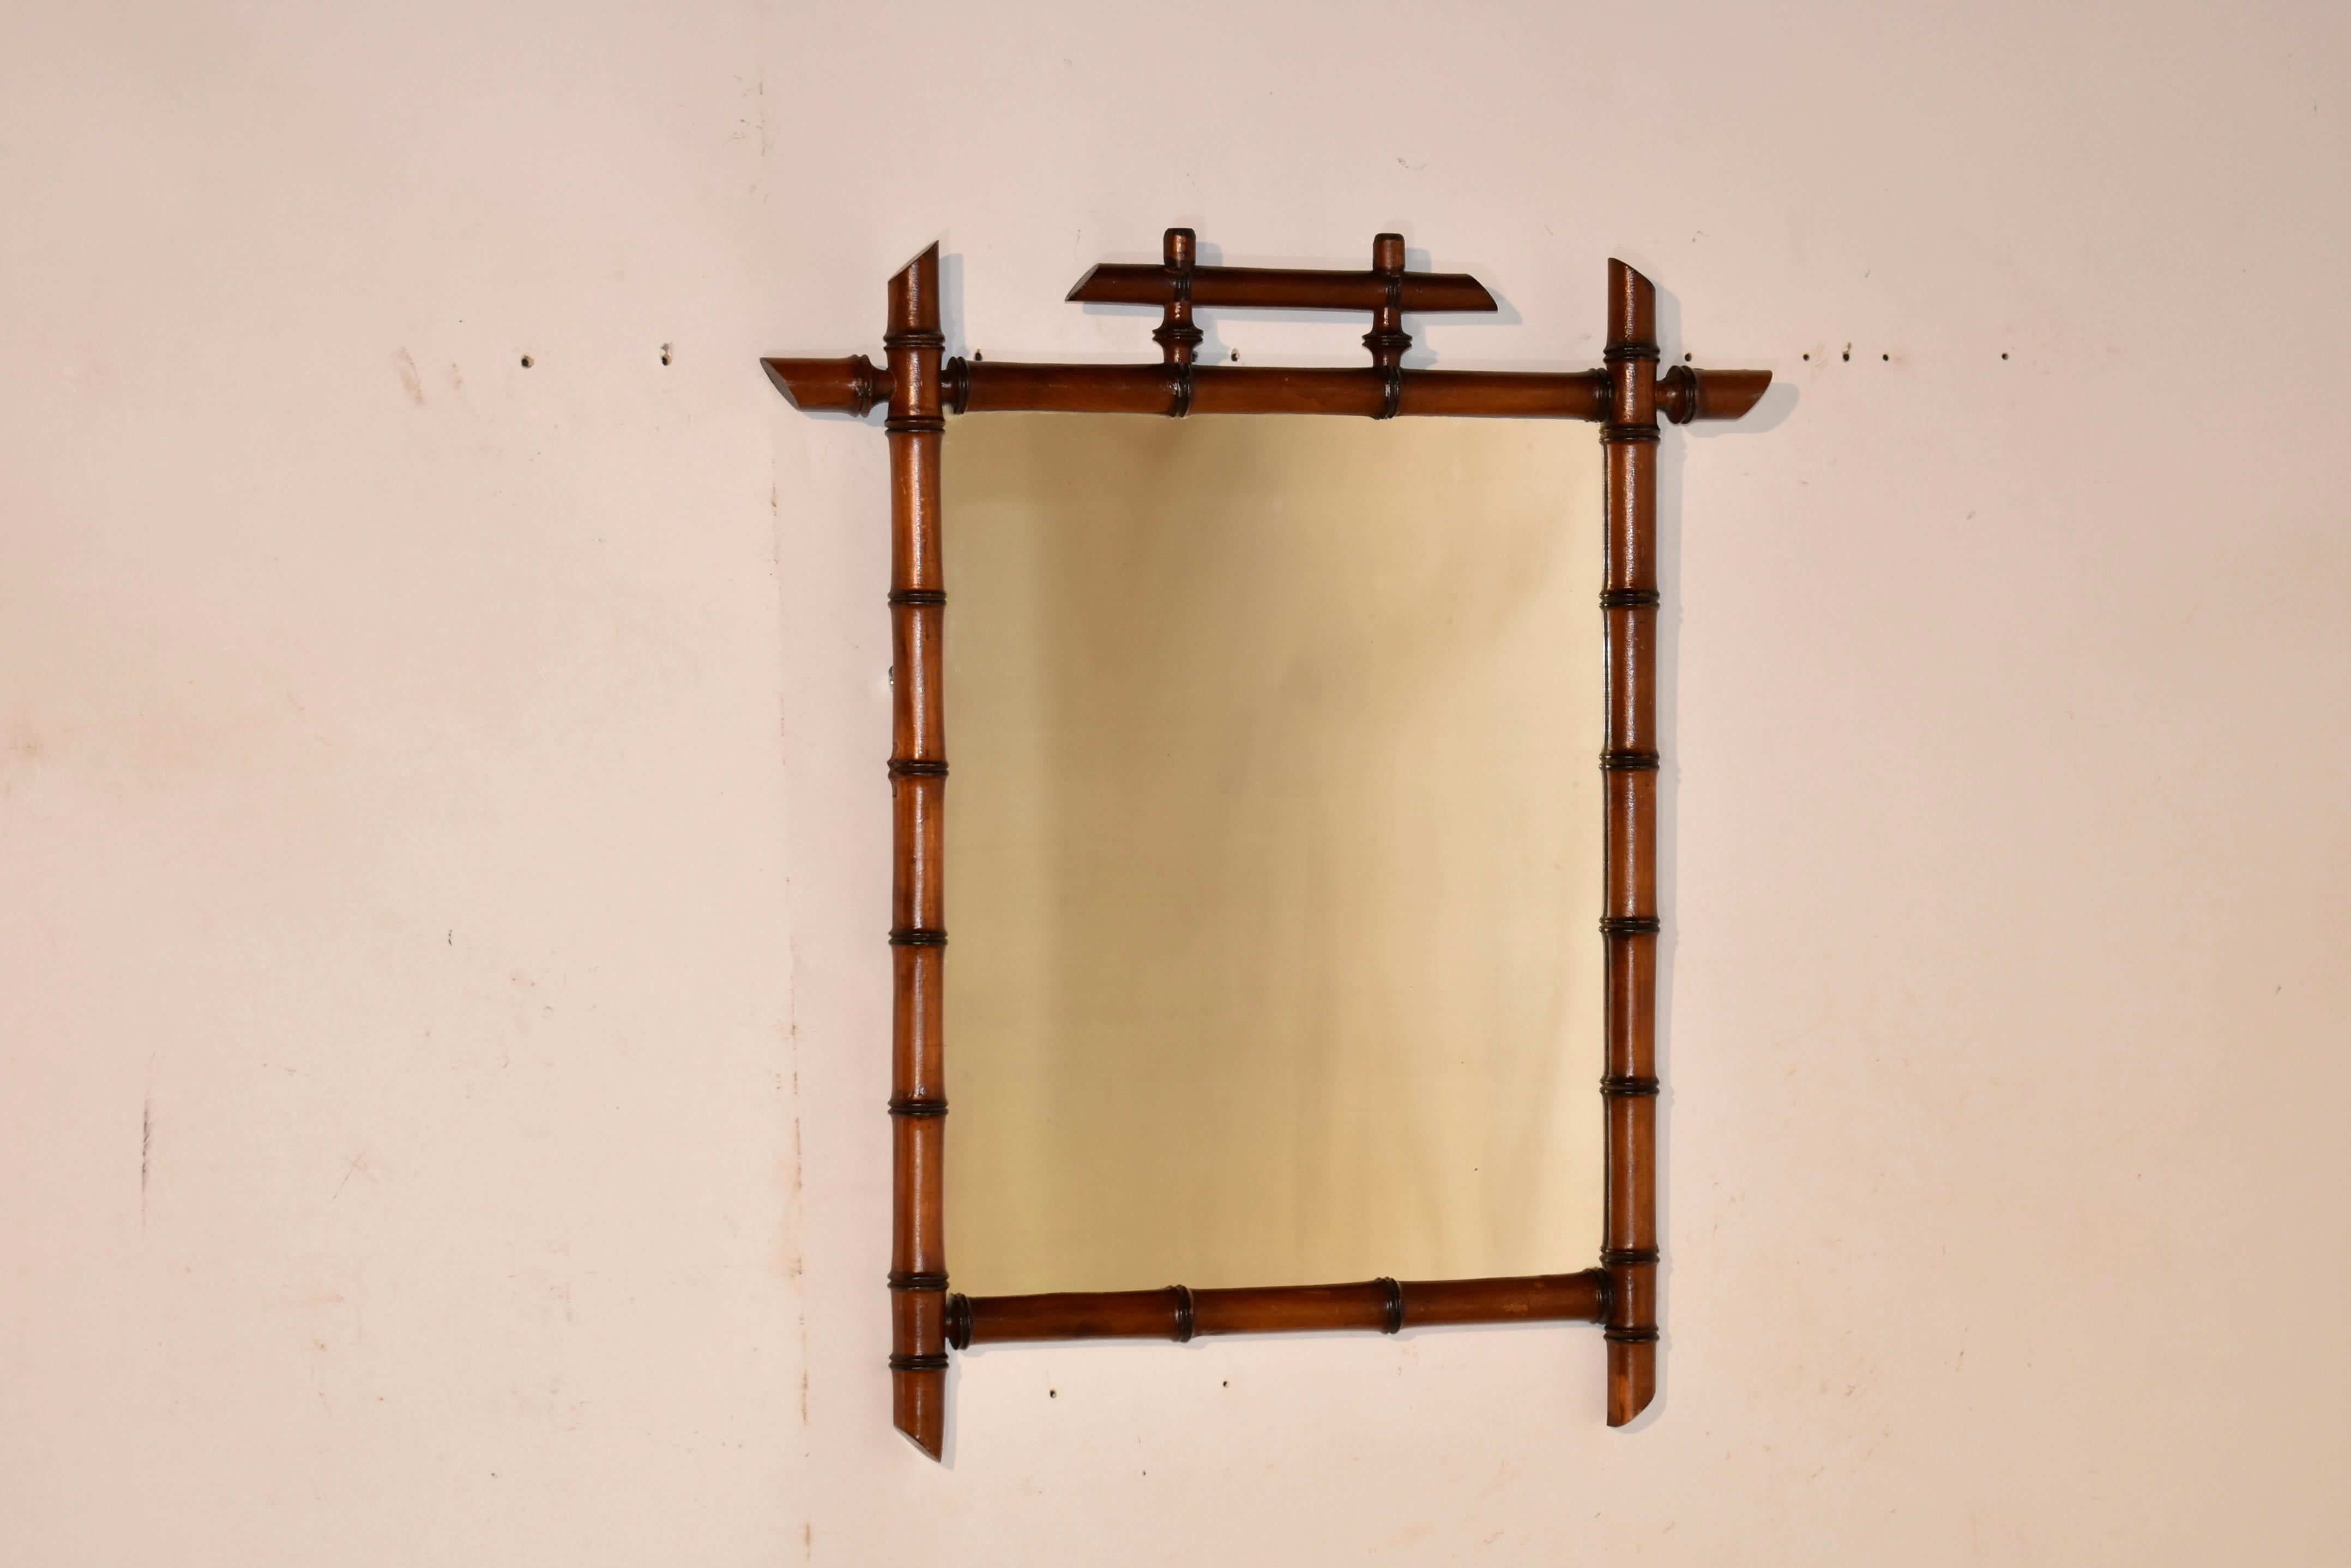 Miroir en faux bambou de la fin du 19e siècle en France.  Le cadre est tourné à la main en cerisier pour donner l'apparence du bambou.  Le cadre entoure un miroir, qui présente une usure honnête due à l'âge et à l'utilisation.